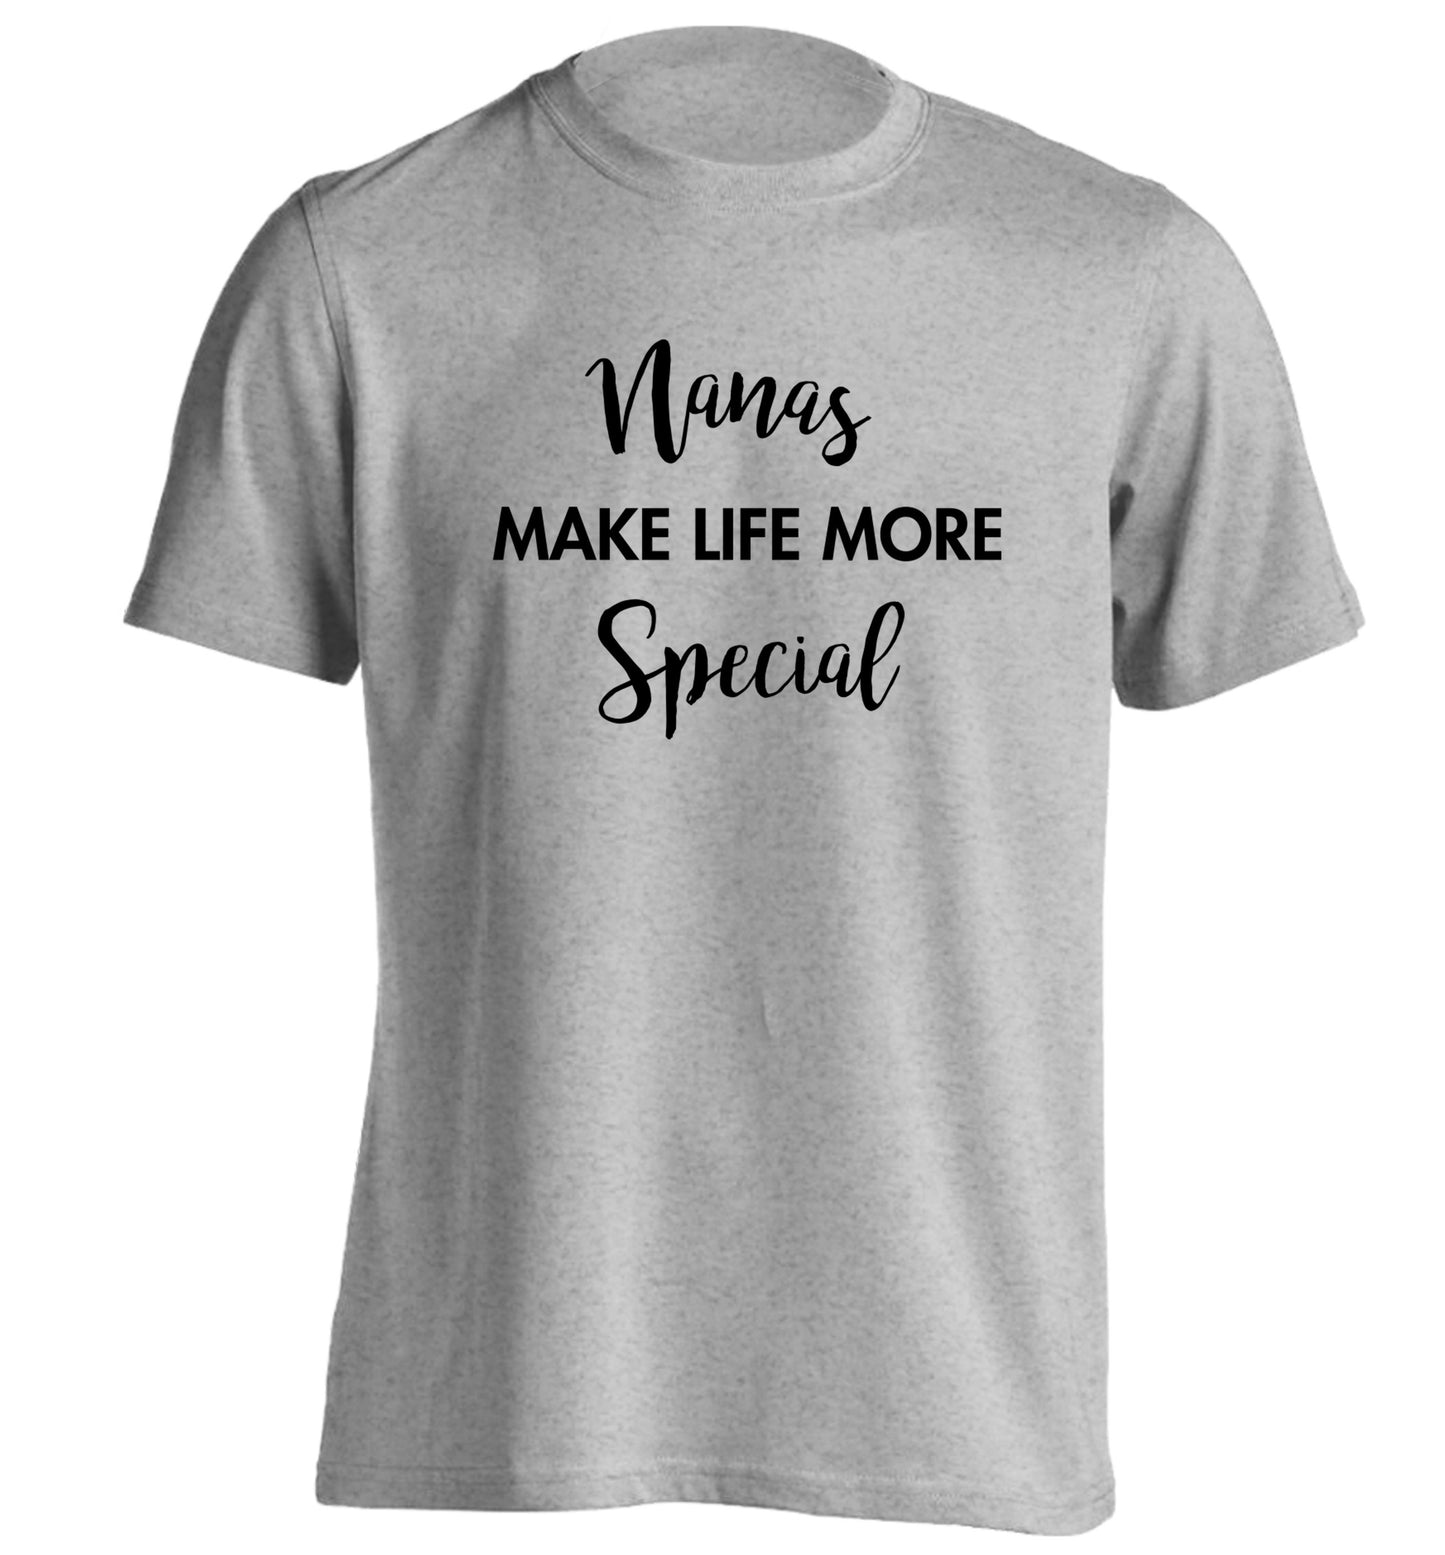 Nanas make life more special adults unisex grey Tshirt 2XL